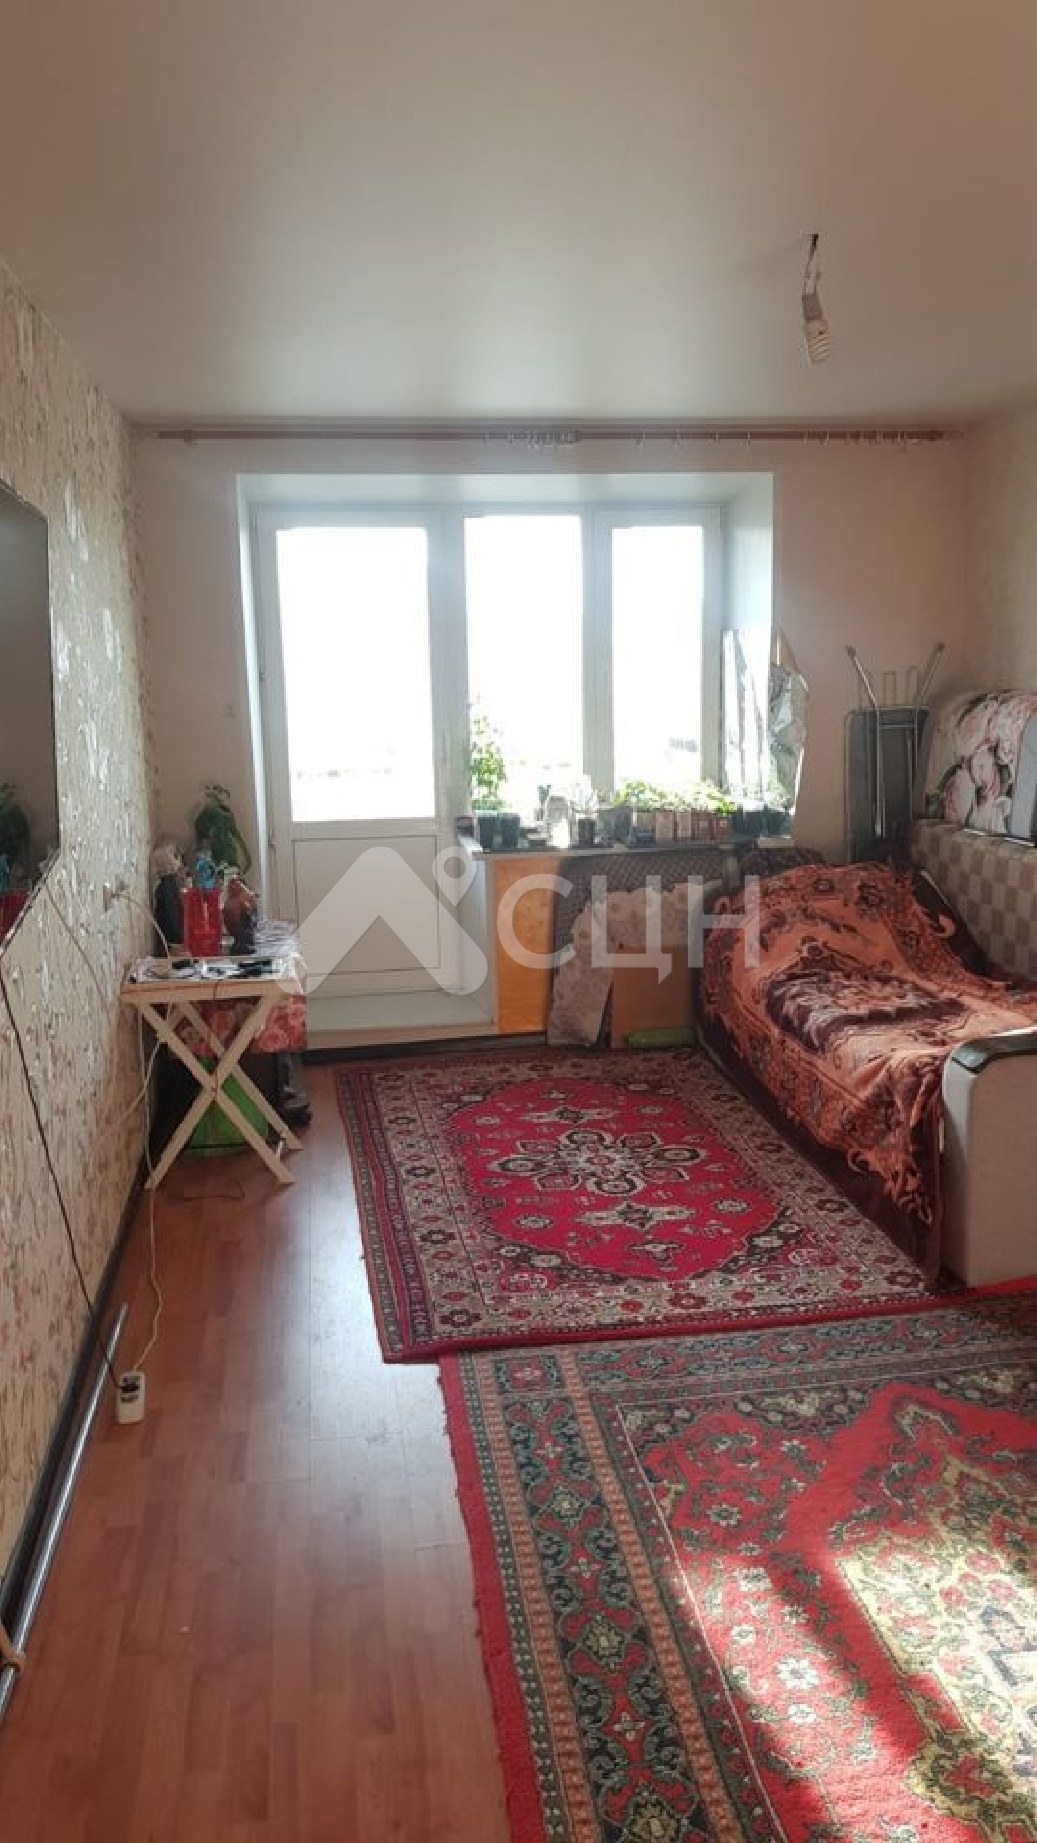 продажа домов саров
: Г. Саров, улица Курчатова, 19, 2-комн квартира, этаж 5 из 5, продажа.